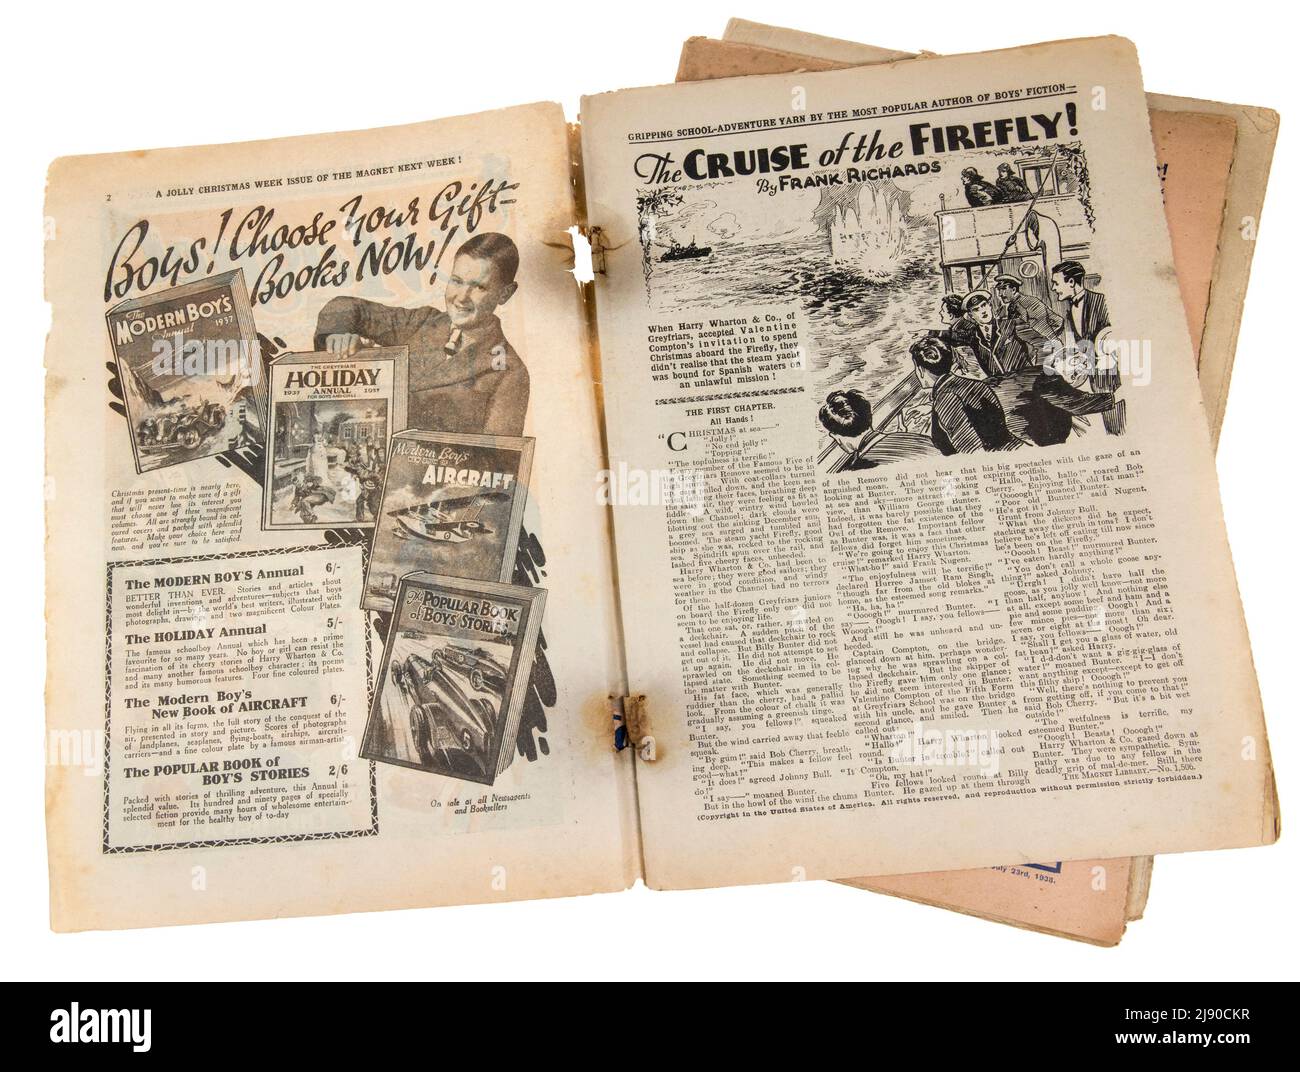 The Magnet, bande dessinée pour garçons avec Billy Bunter, pages ouvertes montrant le début de l'histoire par Frank Richards et une publicité pour les garçons modernes annuelle, de Christ Banque D'Images